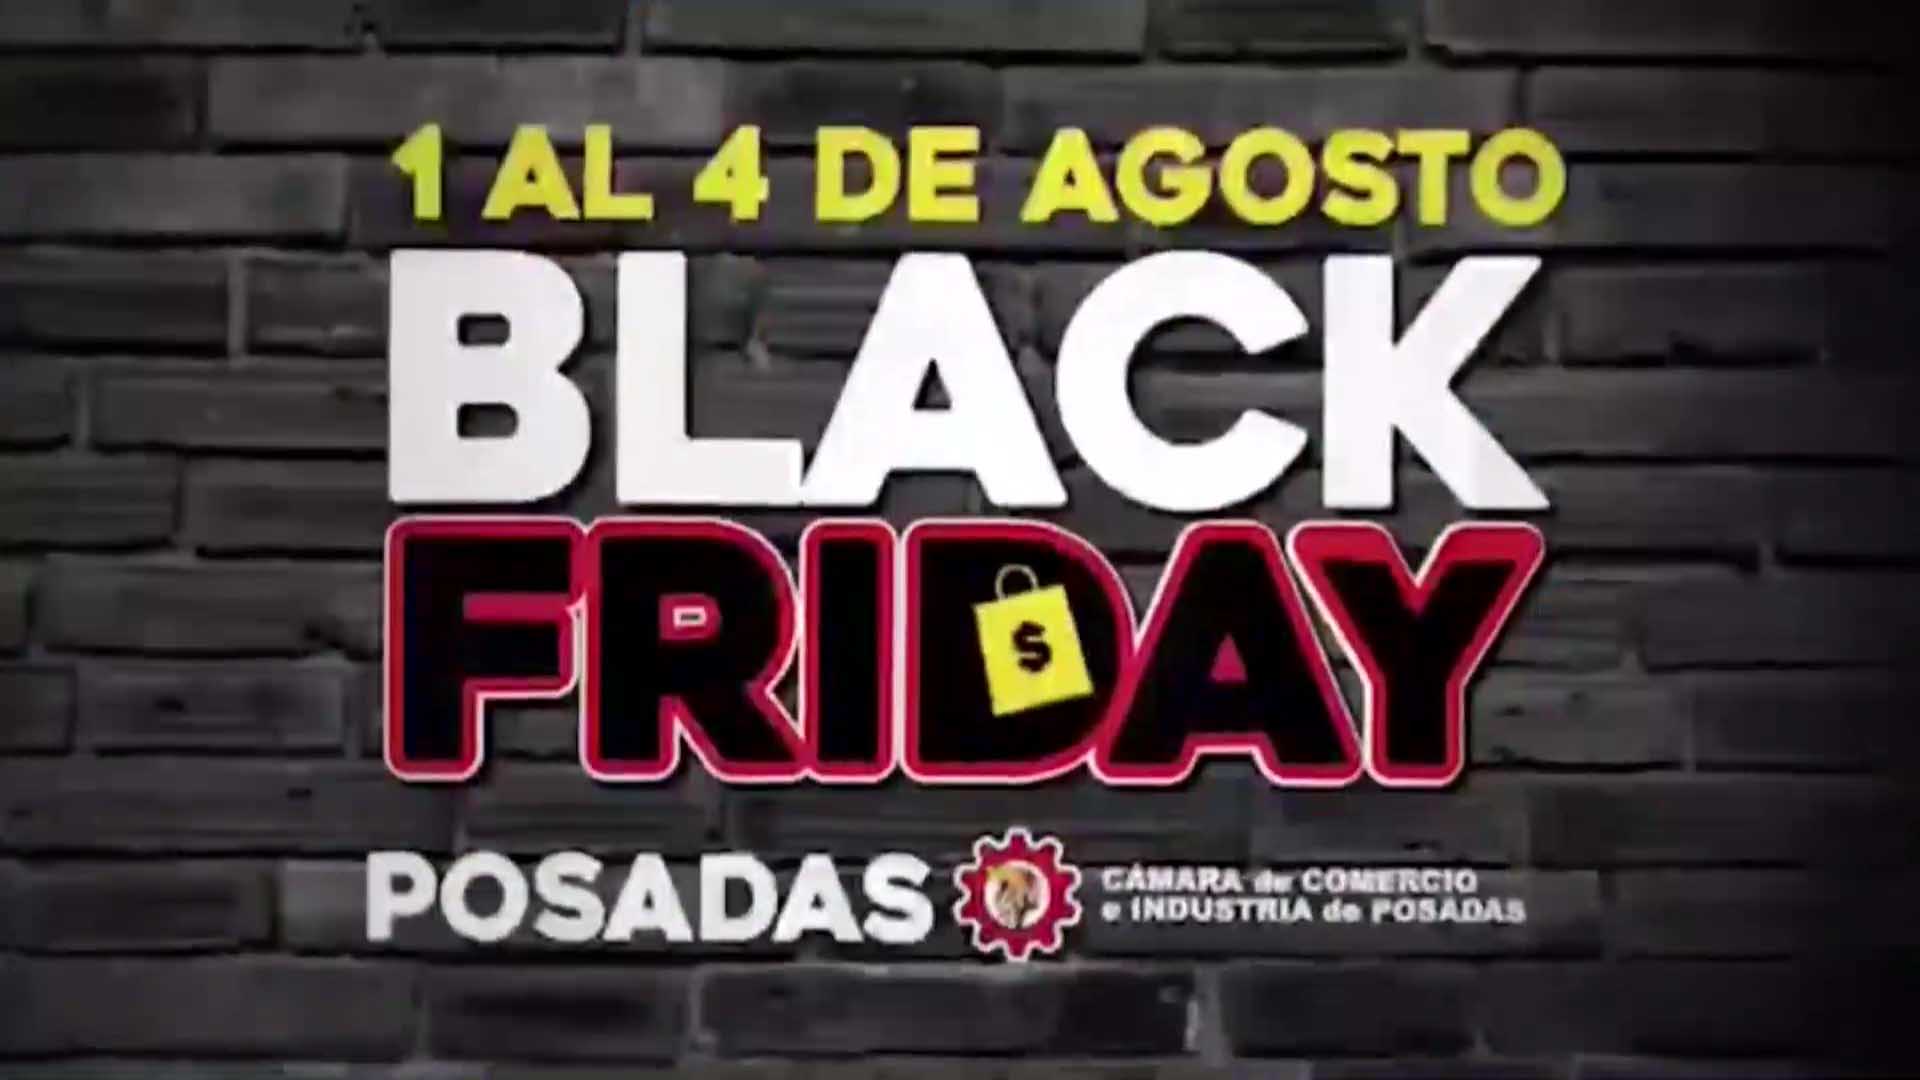 Black Friday Posadas: el IPLyC propone shows de artistas locales